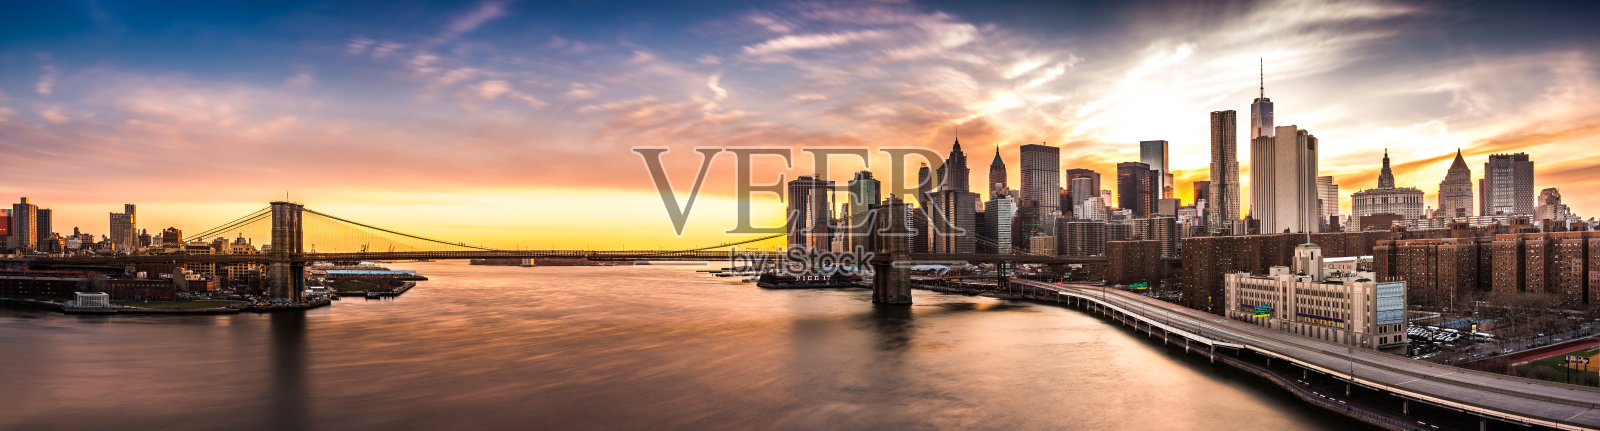 日落时的布鲁克林大桥全景照片摄影图片